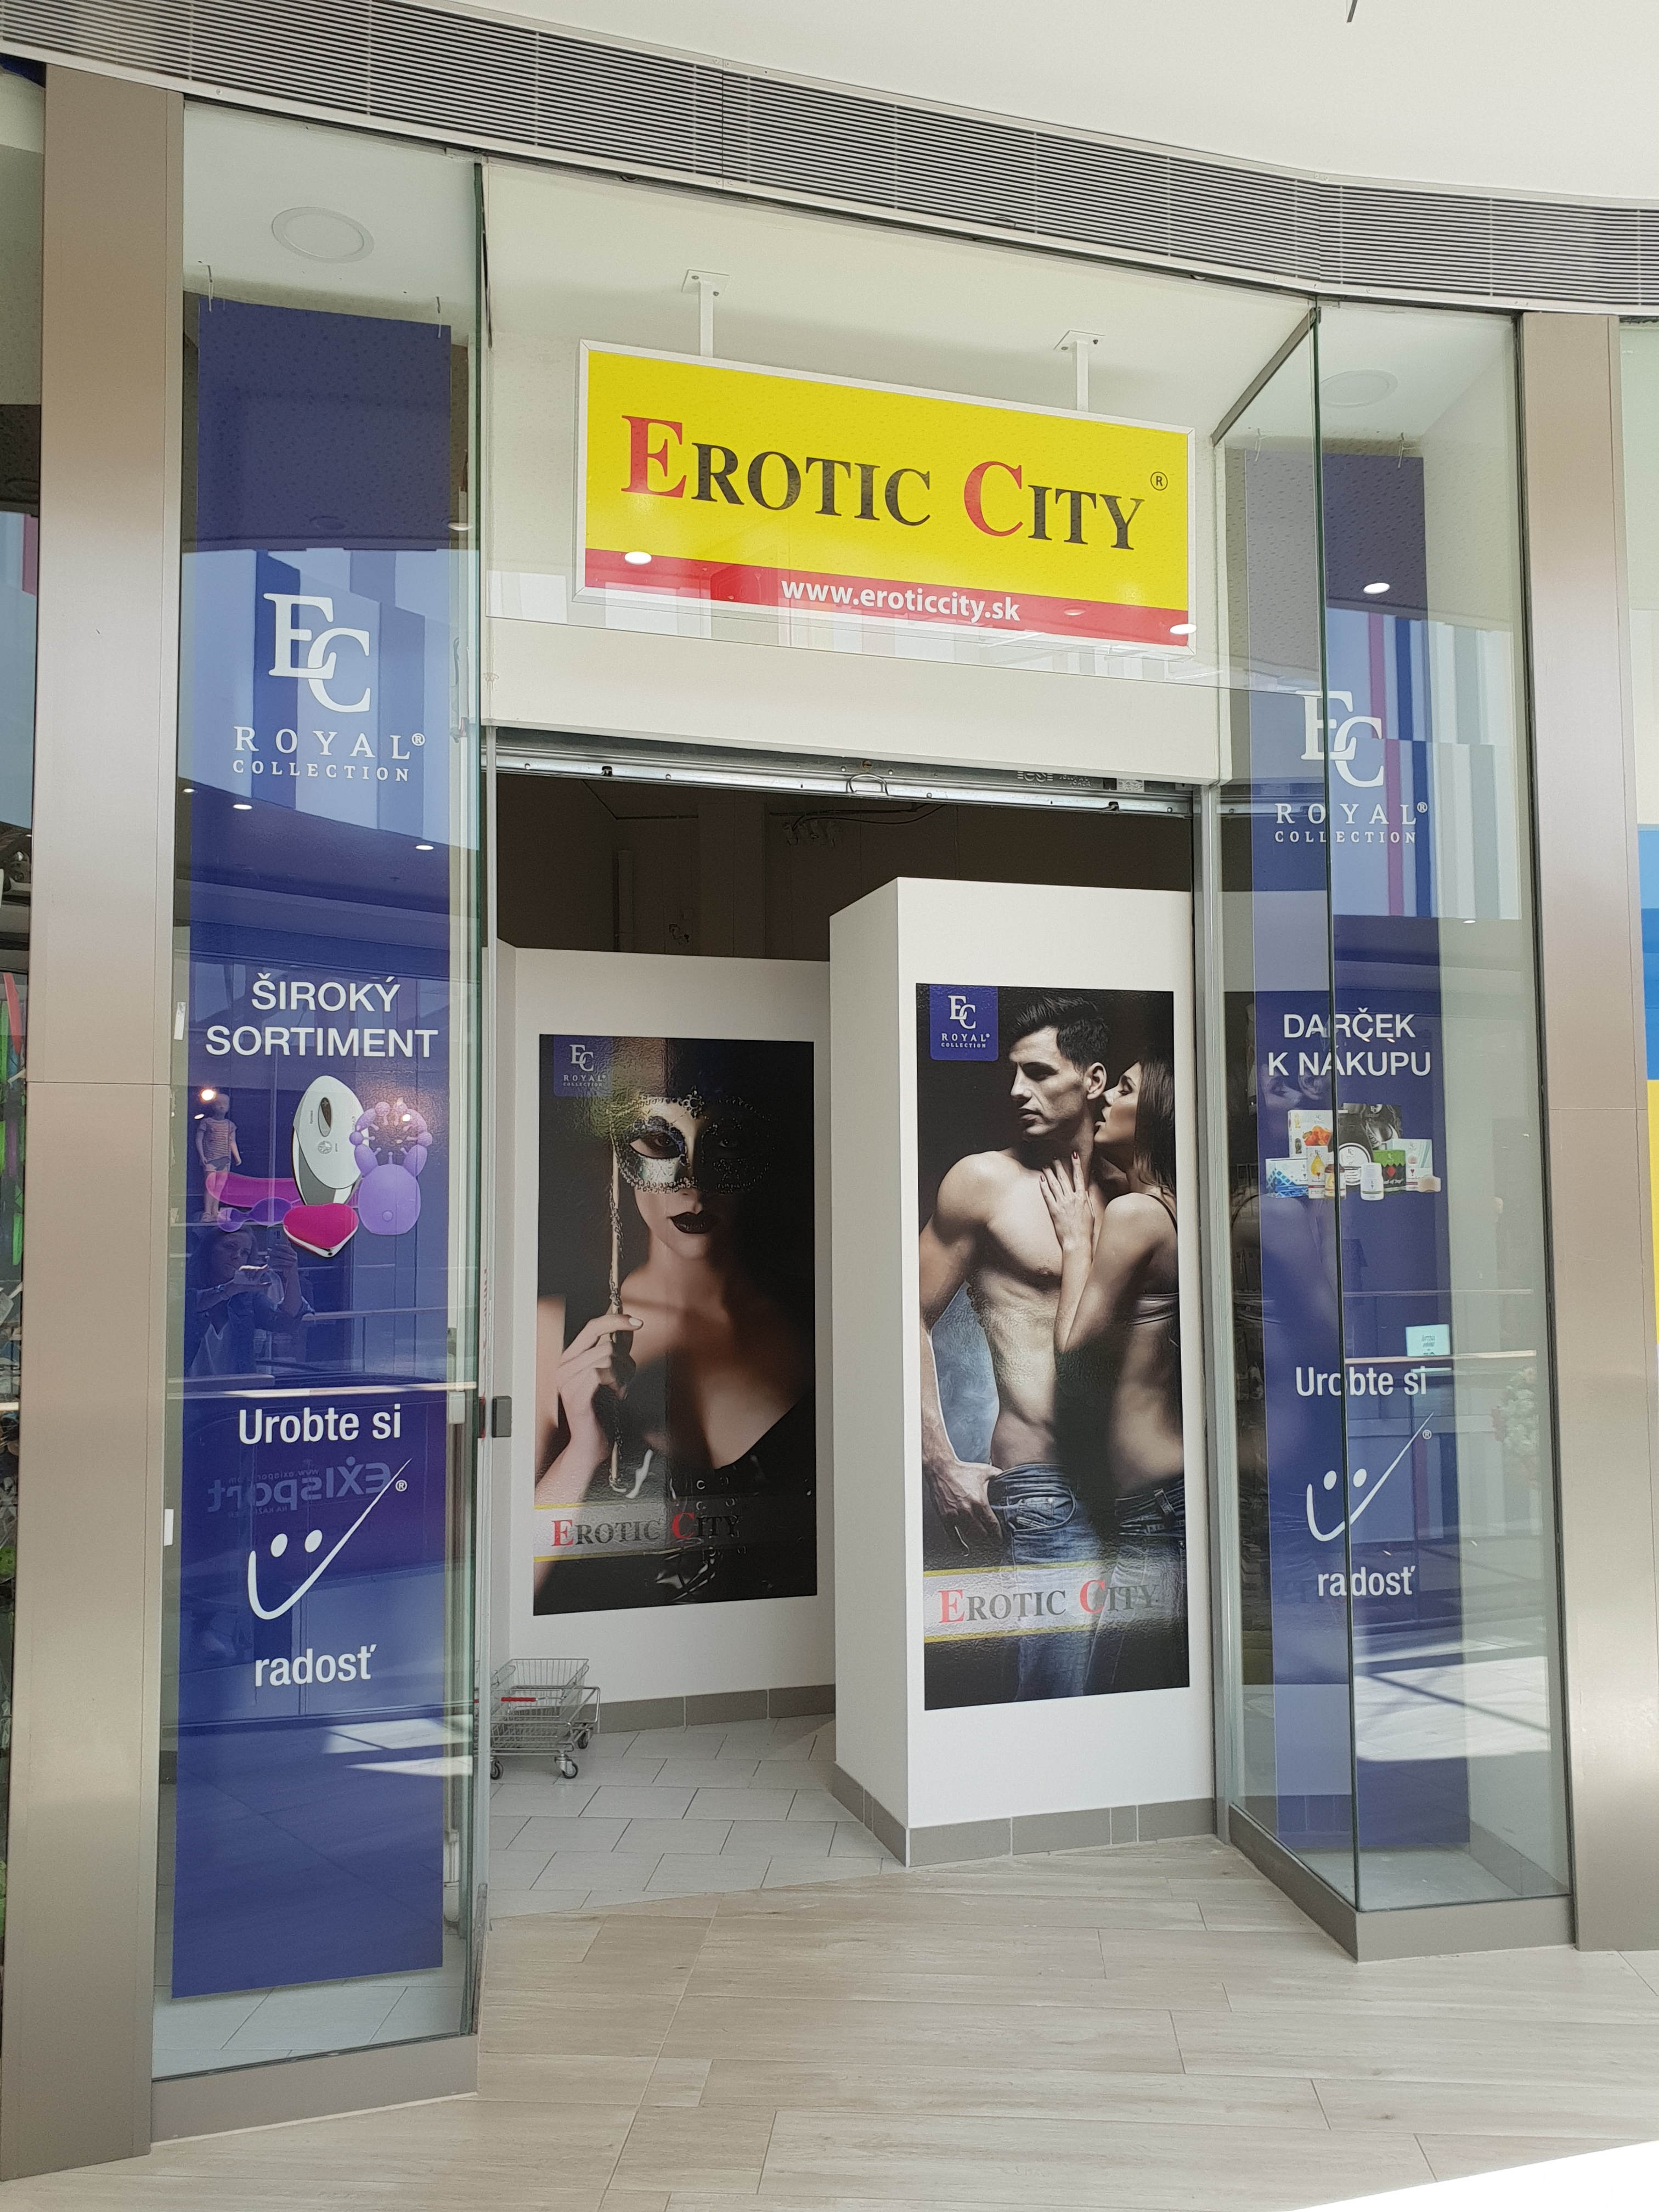 Erotic city